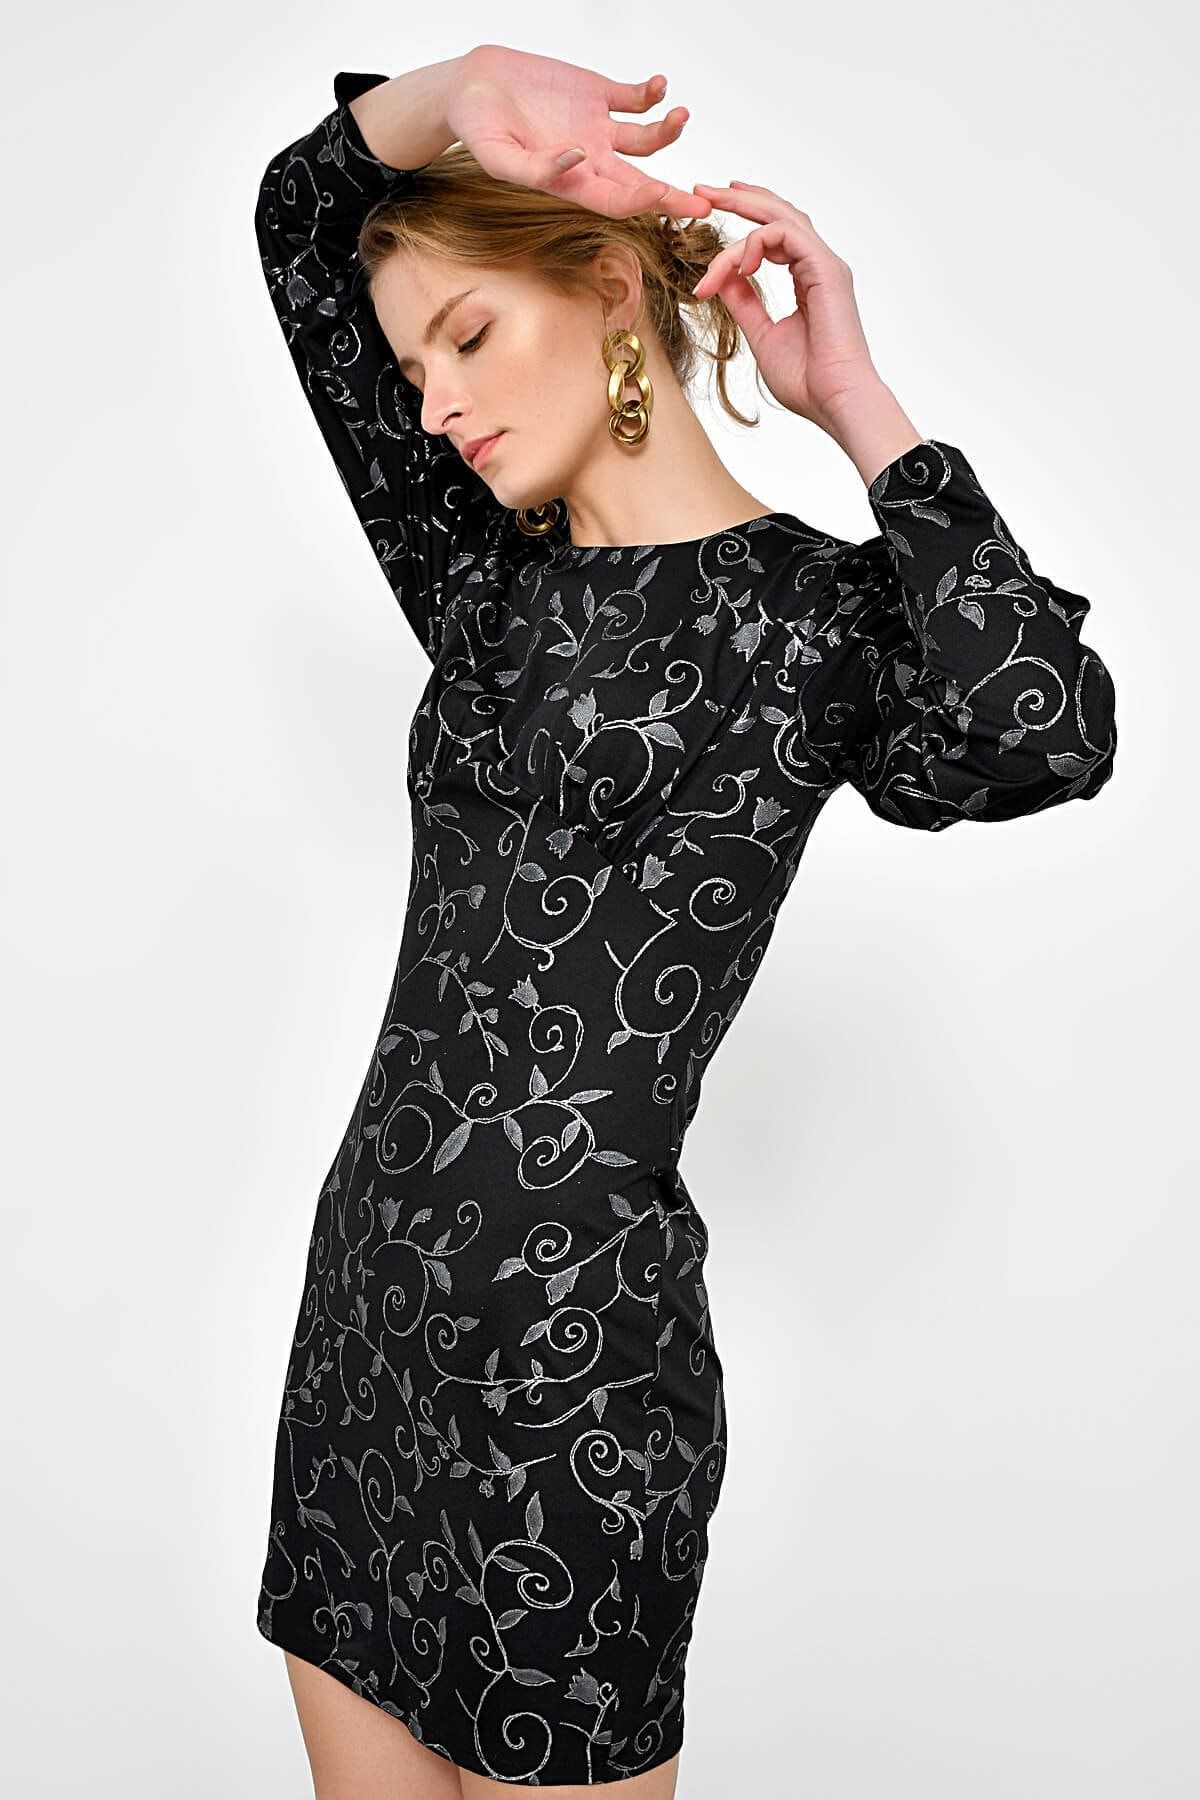 Hanna's Kadın Siyah Varak Baskı Desenli Omuzları Büzgülü Elbise HN2371